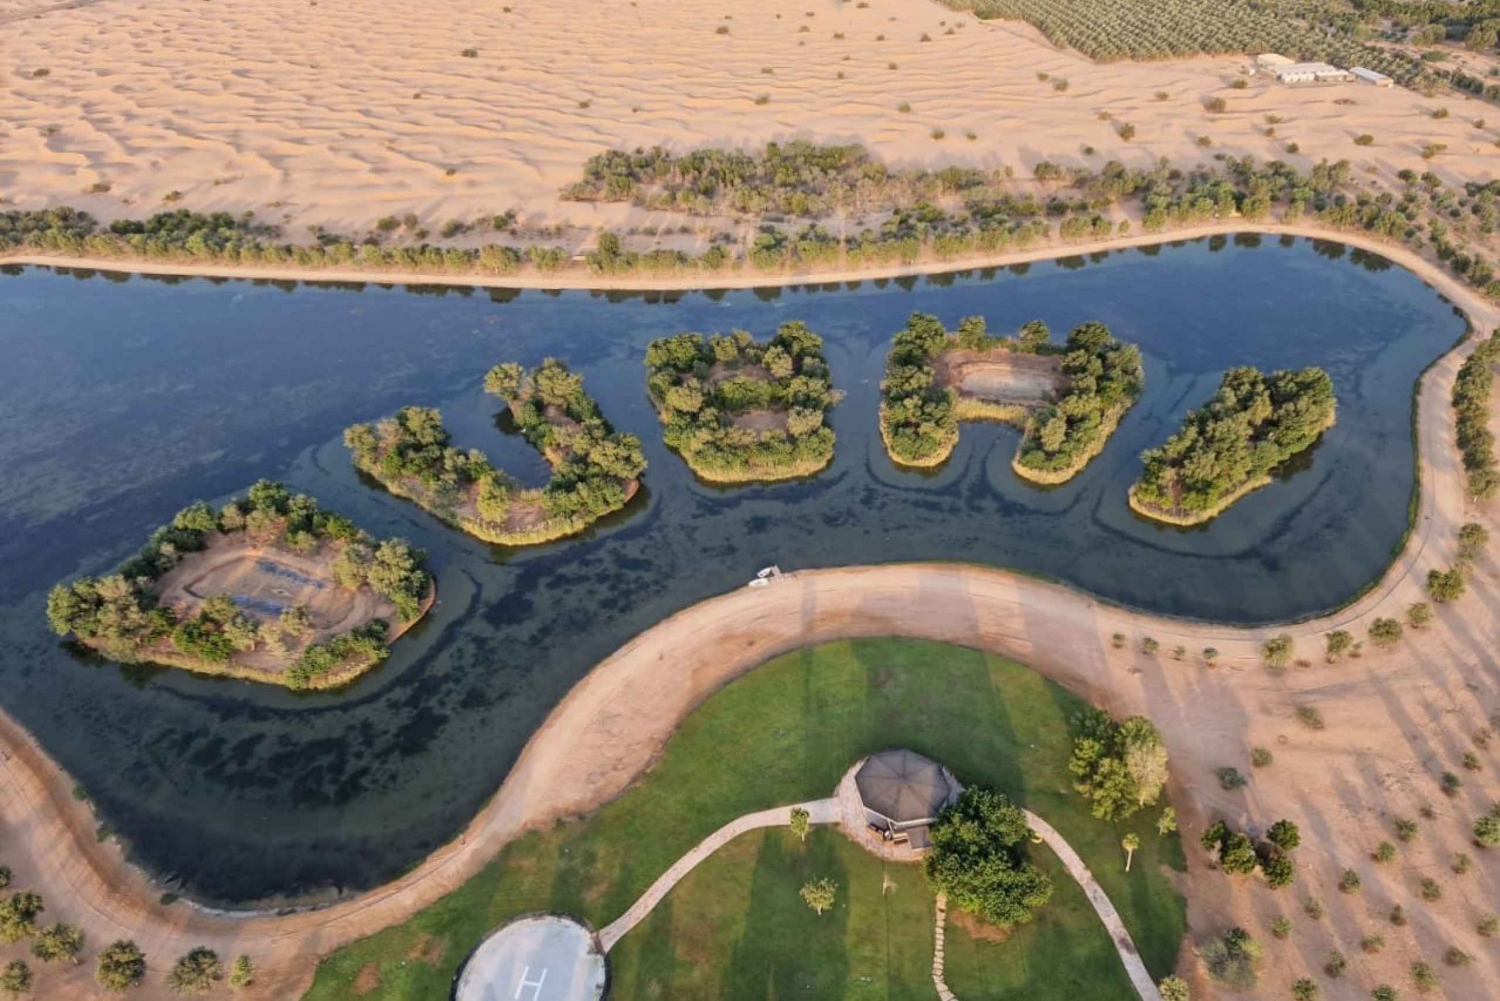 Dubai: Hot Air Balloon Ride